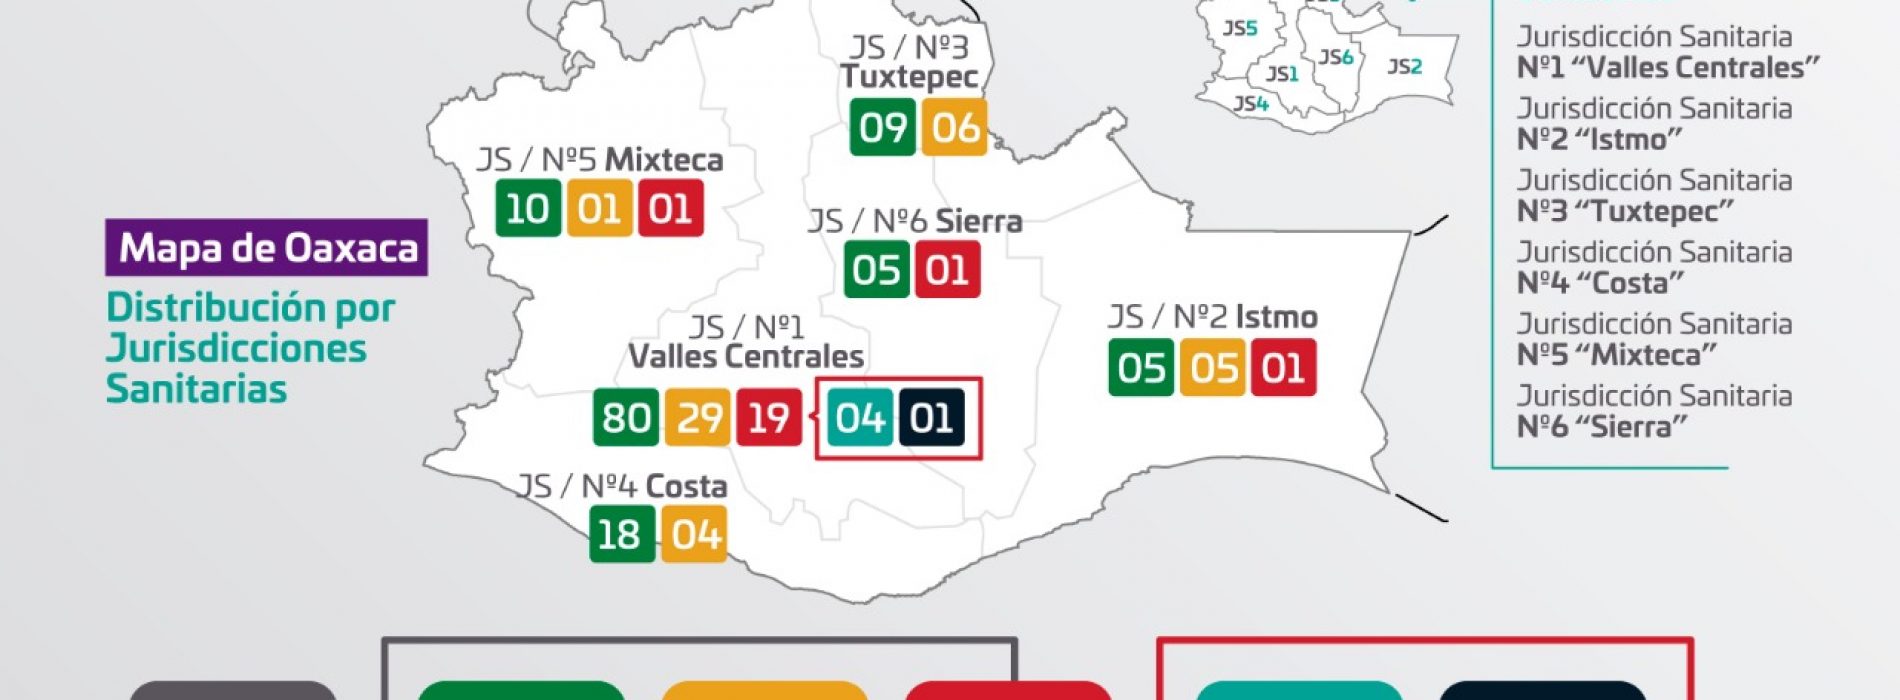 Se mantienen 22 casos positivos de COVID-19 en Oaxaca